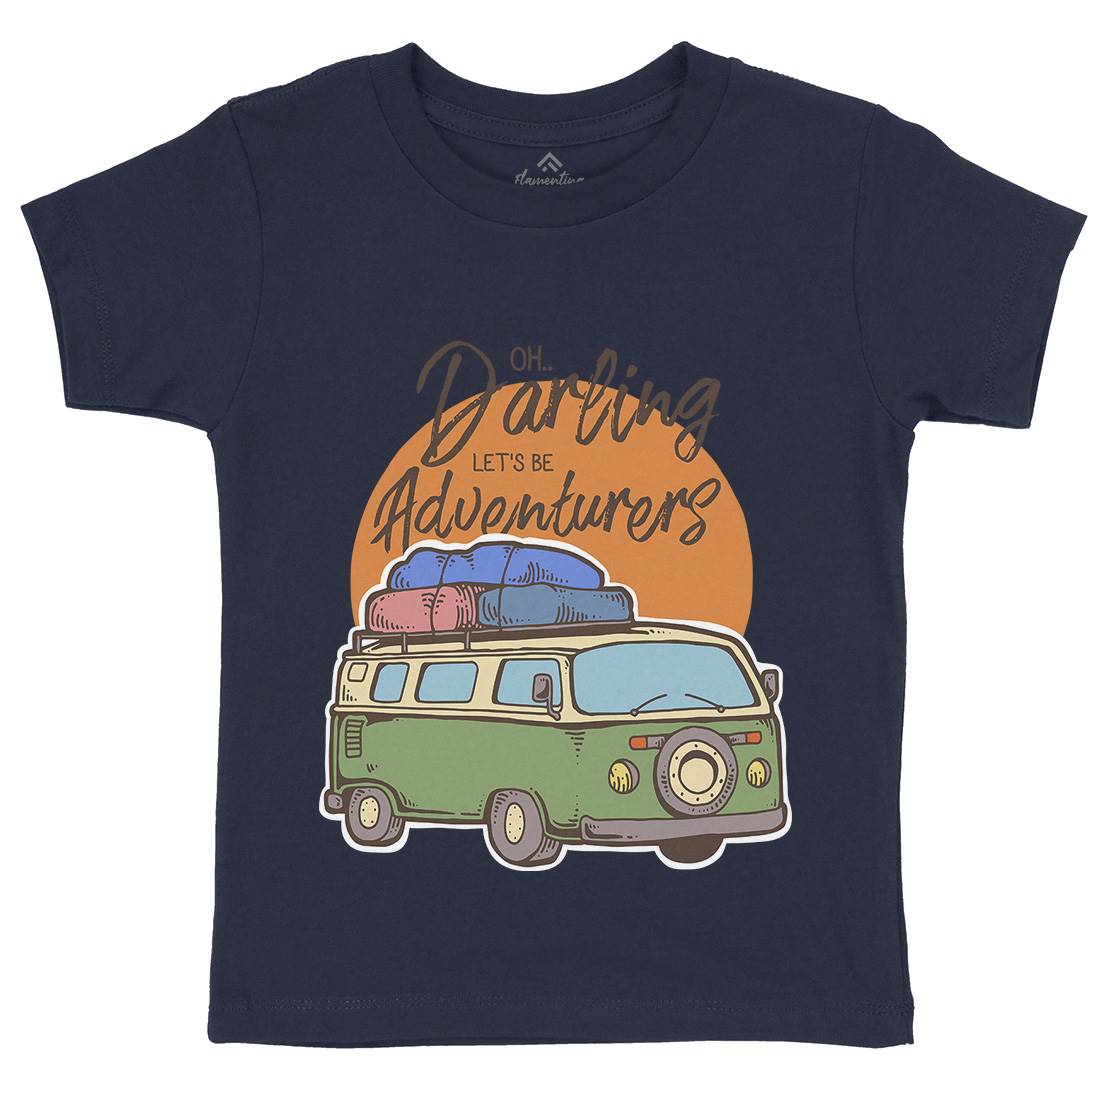 Be Adventurers Kids Organic Crew Neck T-Shirt Nature C707